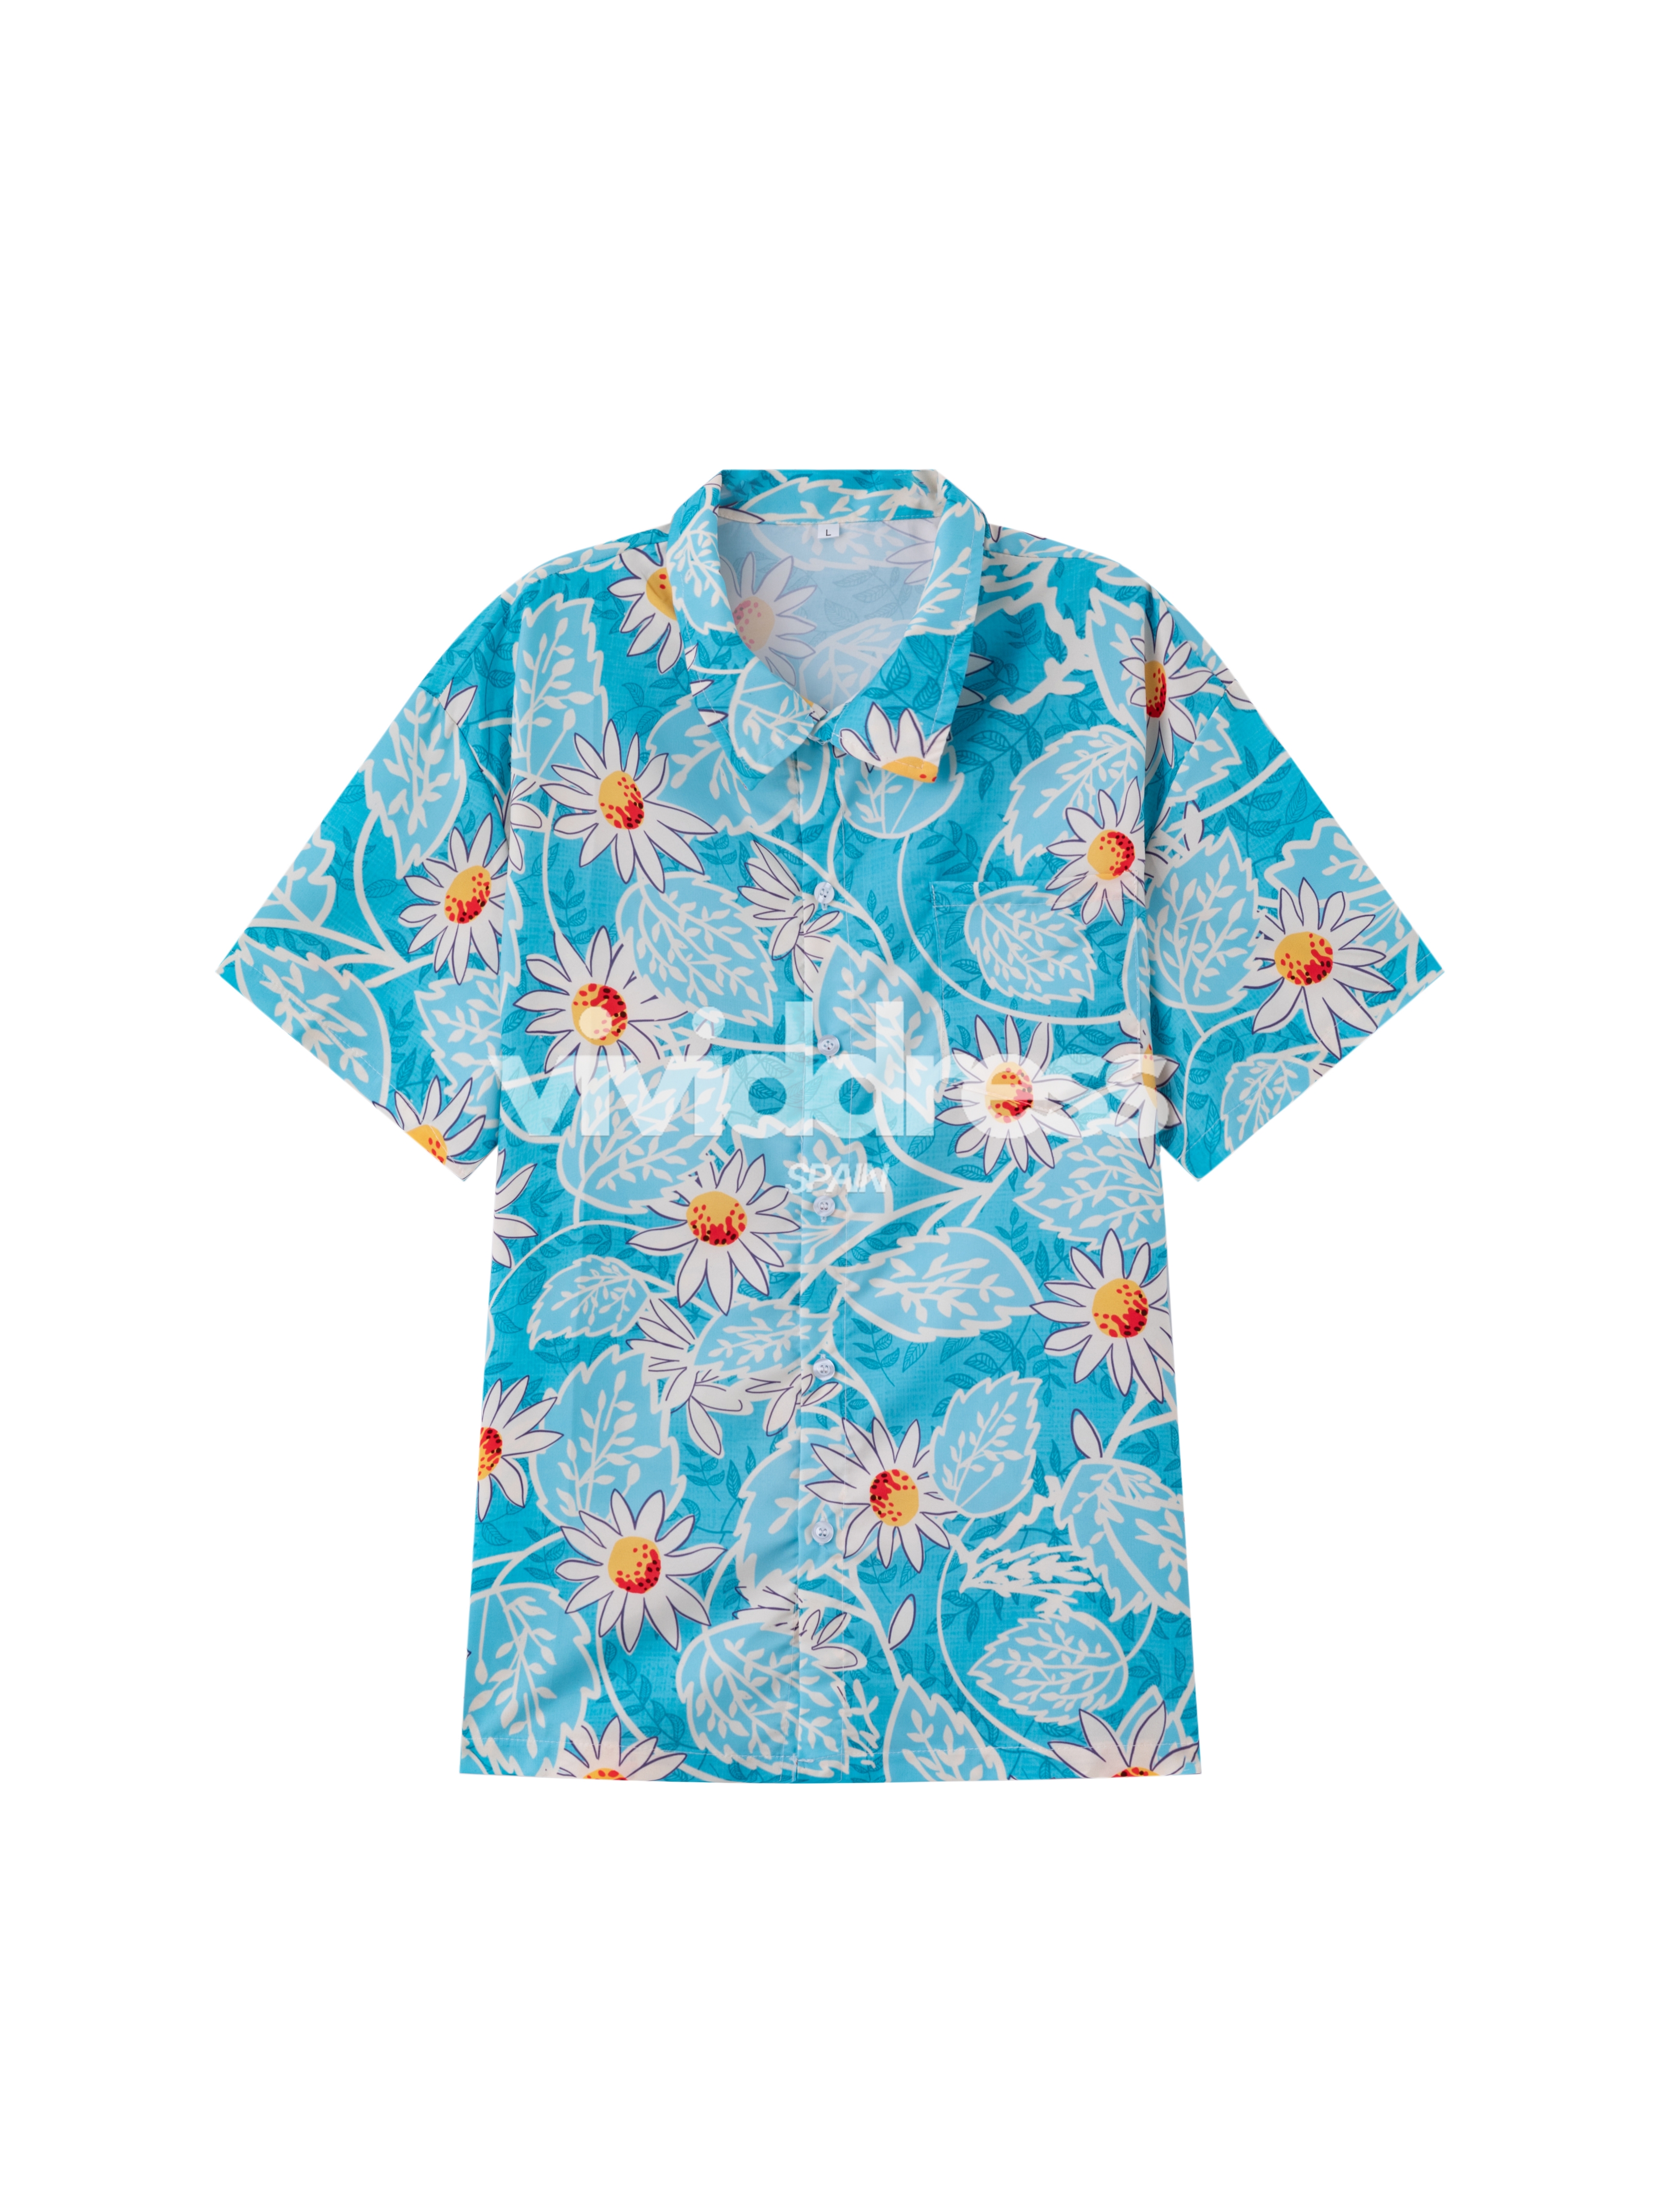 Men's Floral Print Blue Beach Summer Holiday Short Sleeve Shirt